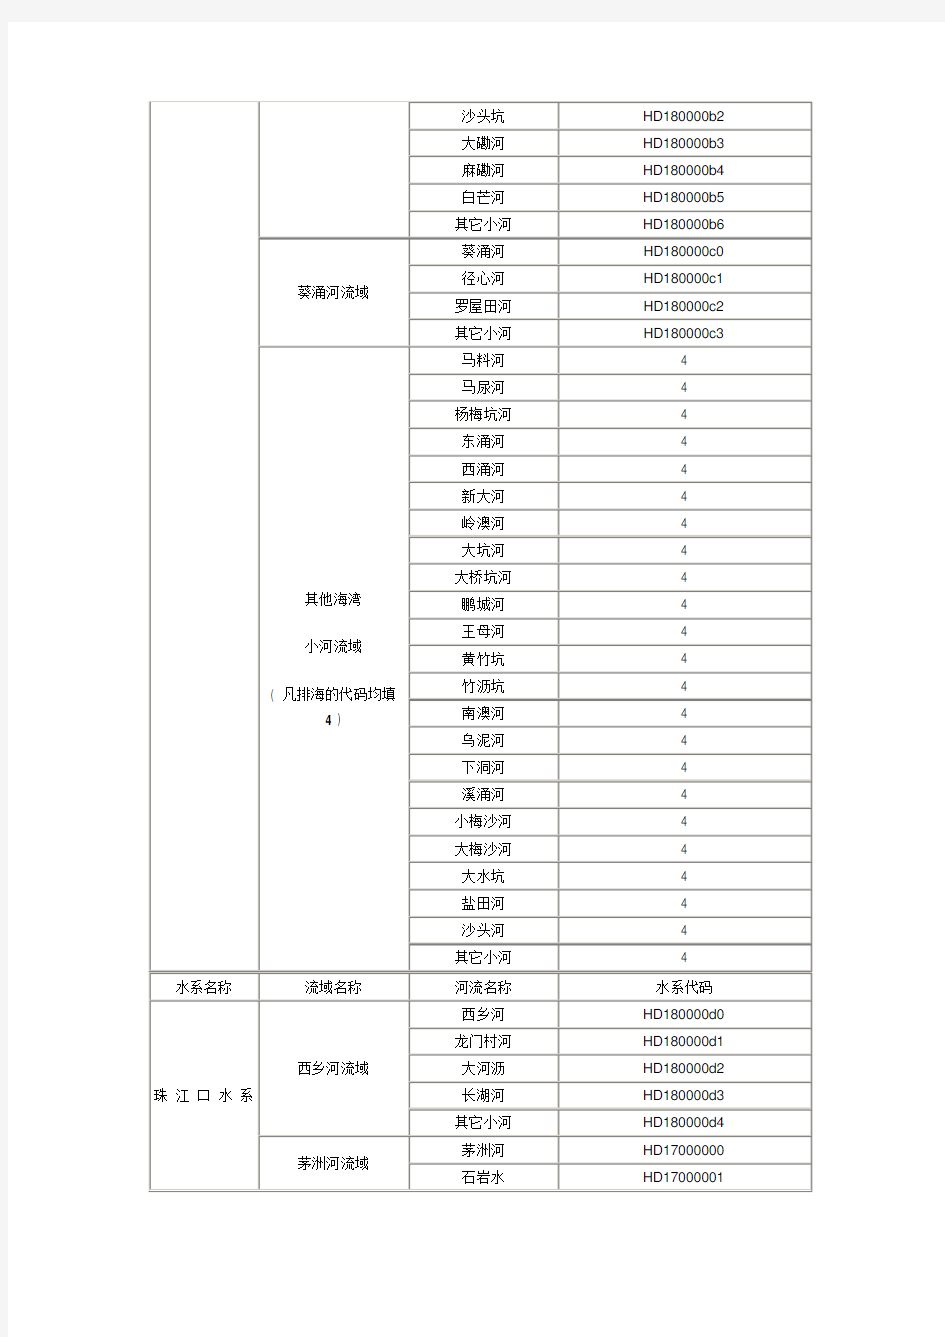 深圳水系流域名称及代码对照表